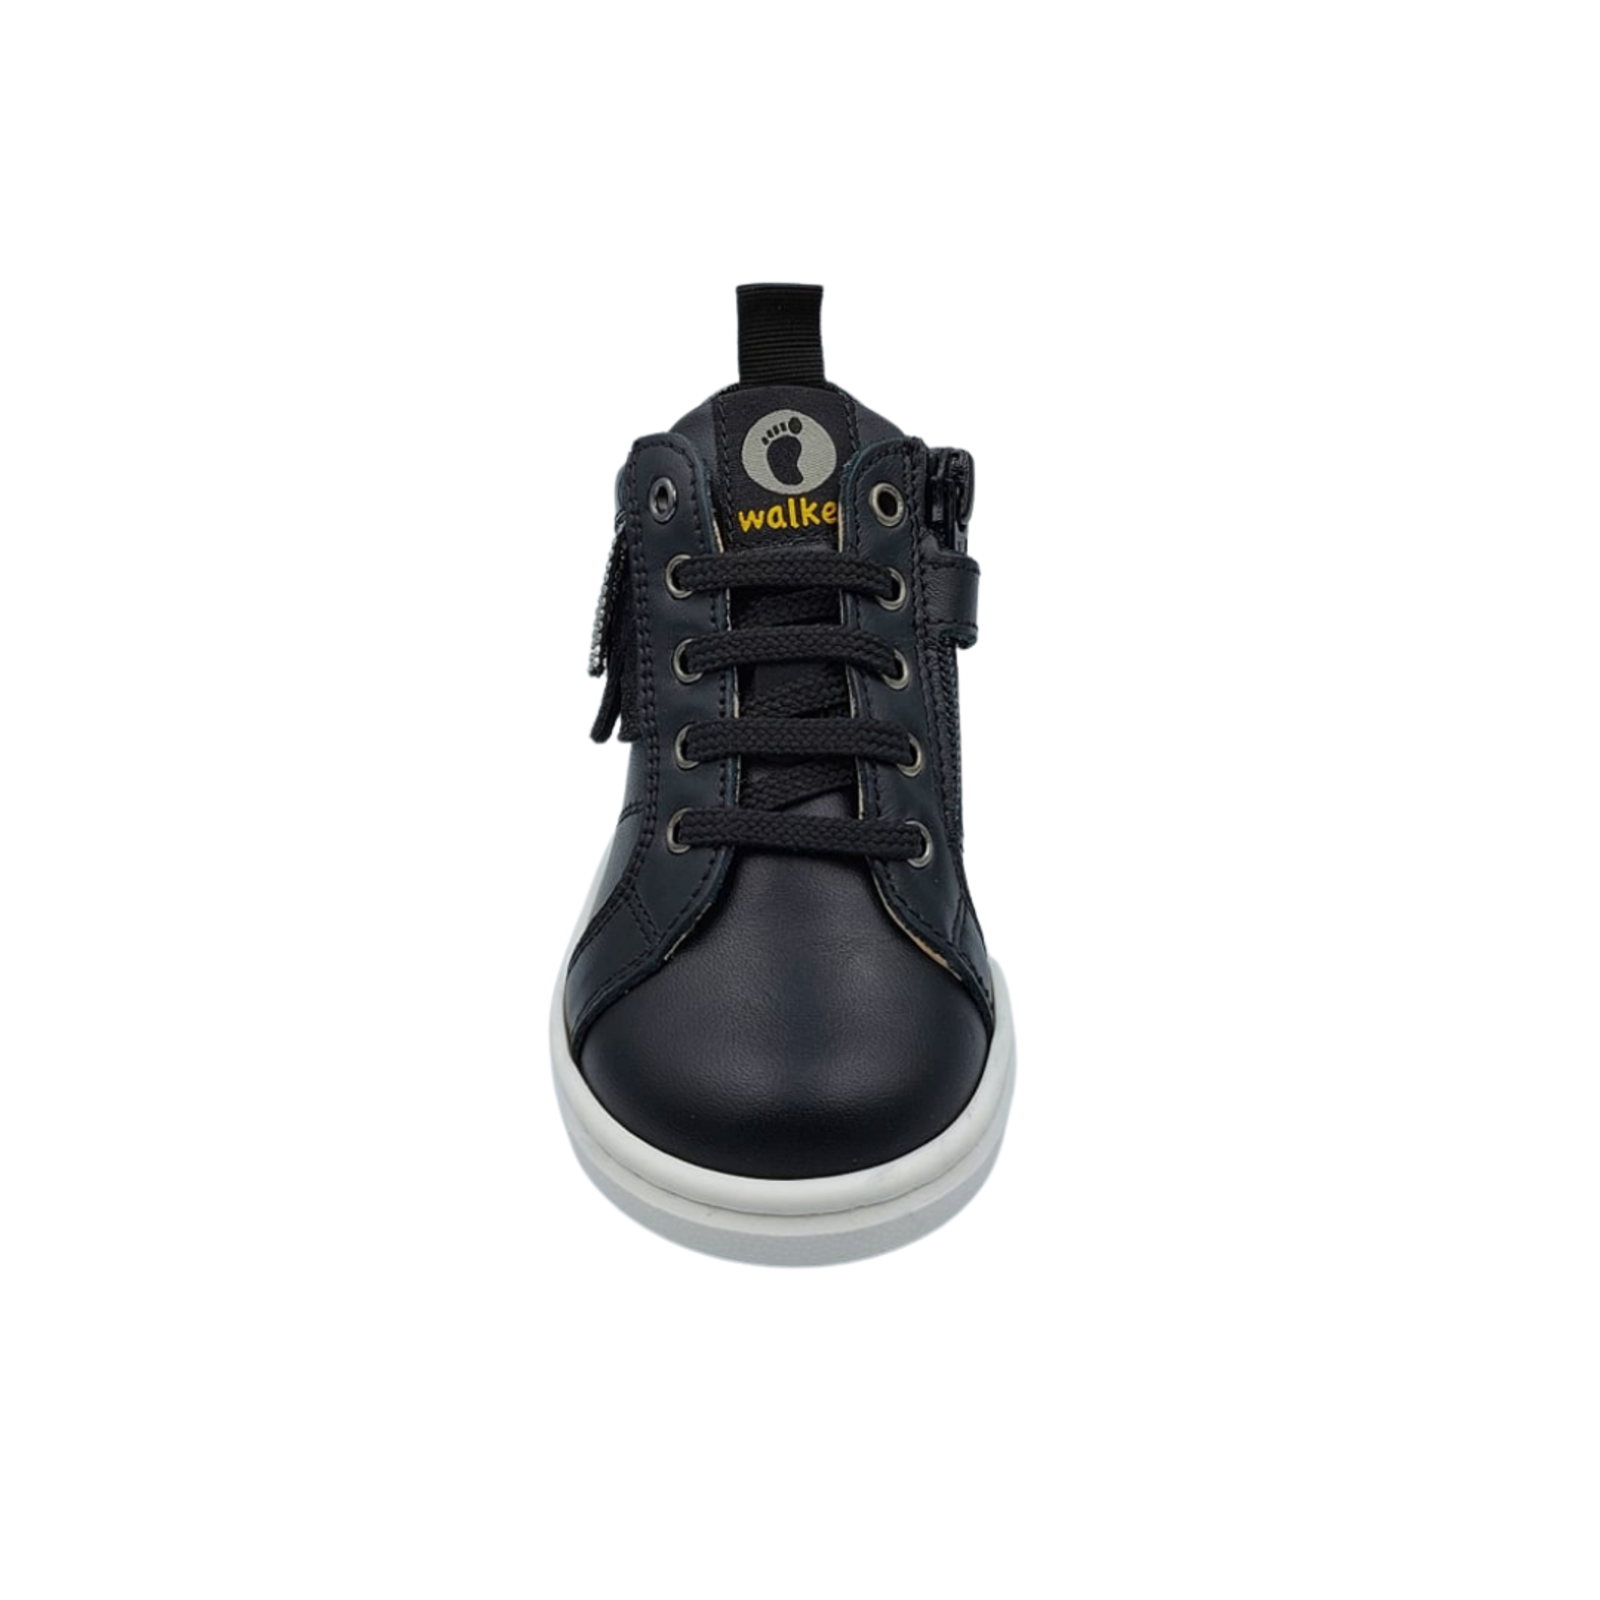 Walkey Sneaker black lace - up